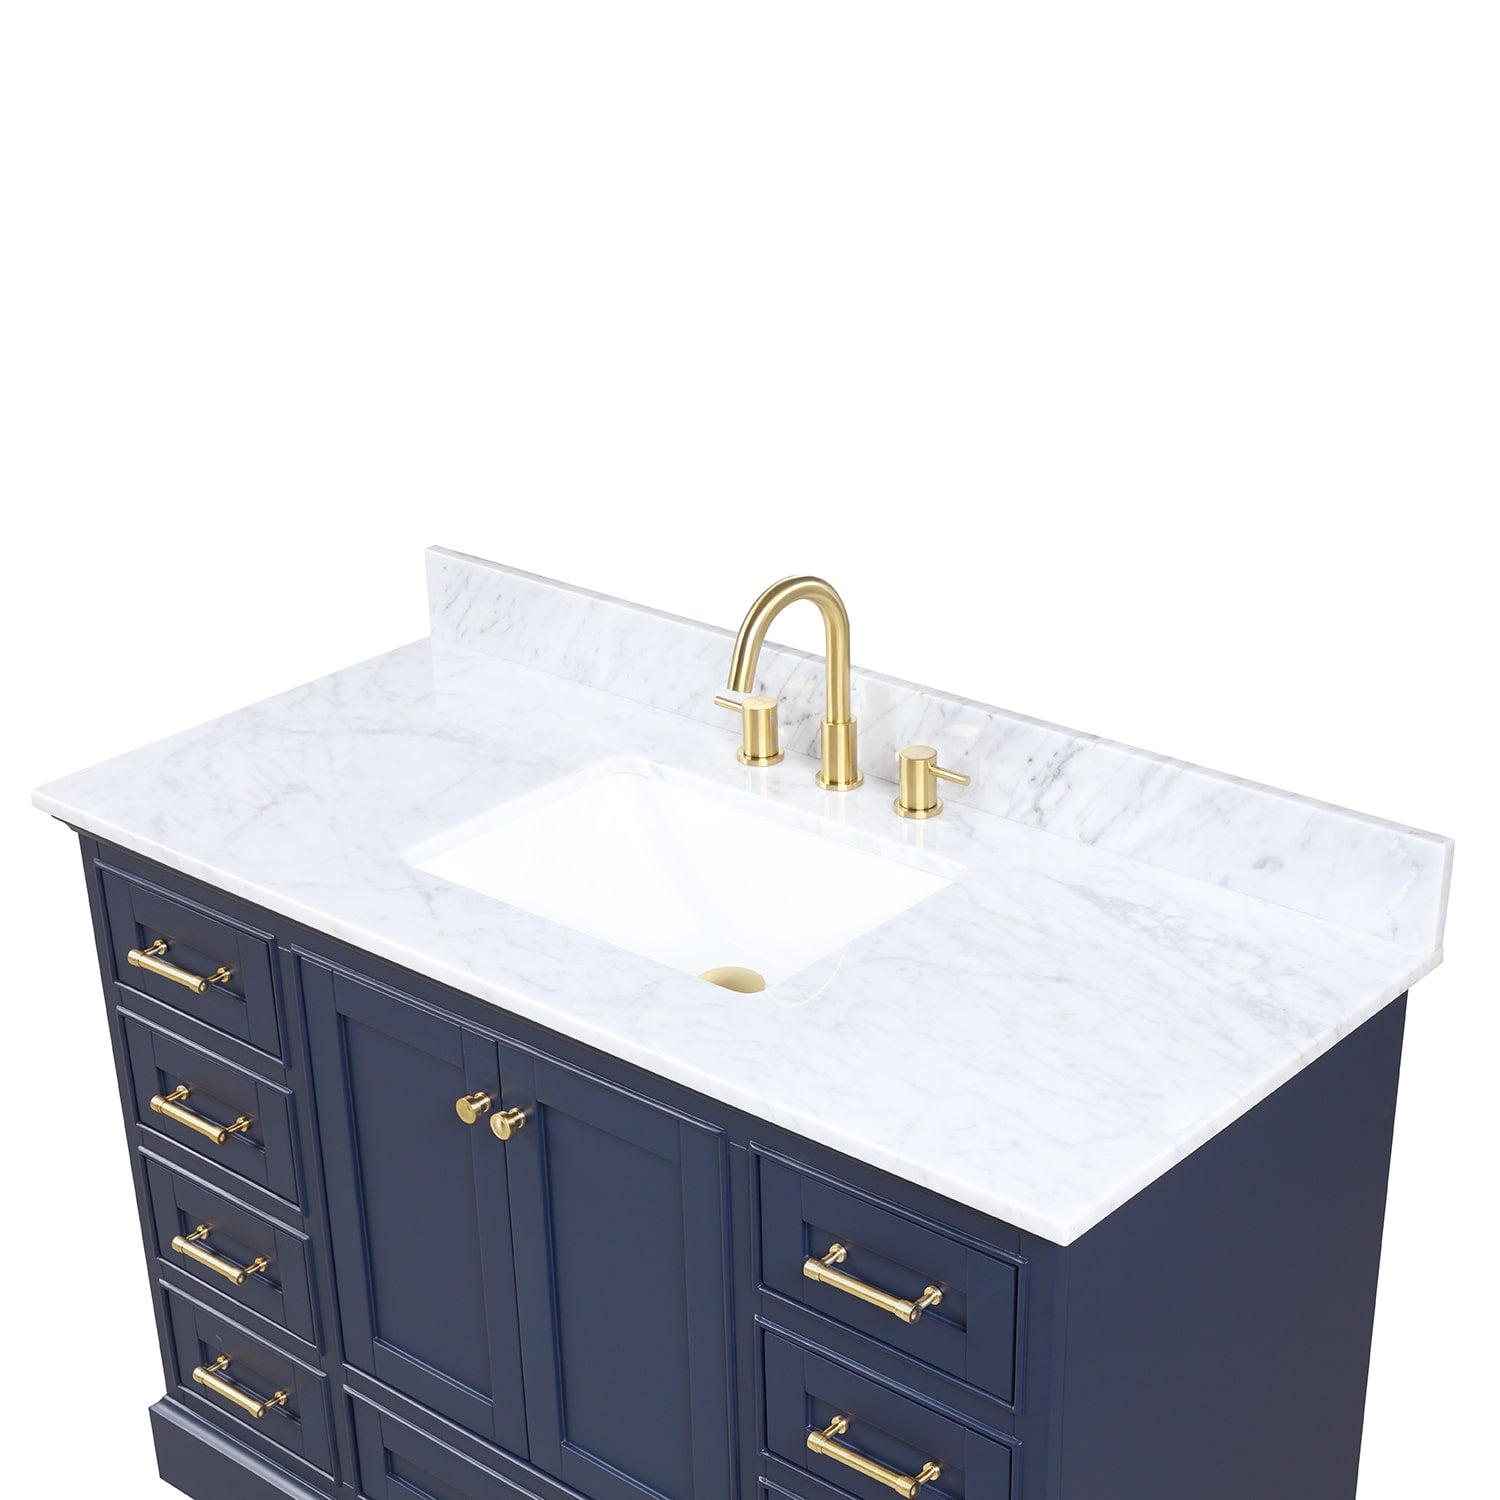 Copenhagen 48″ Bathroom Vanity with Single Sink Marble Top - Contemporary Bathroom Vanity